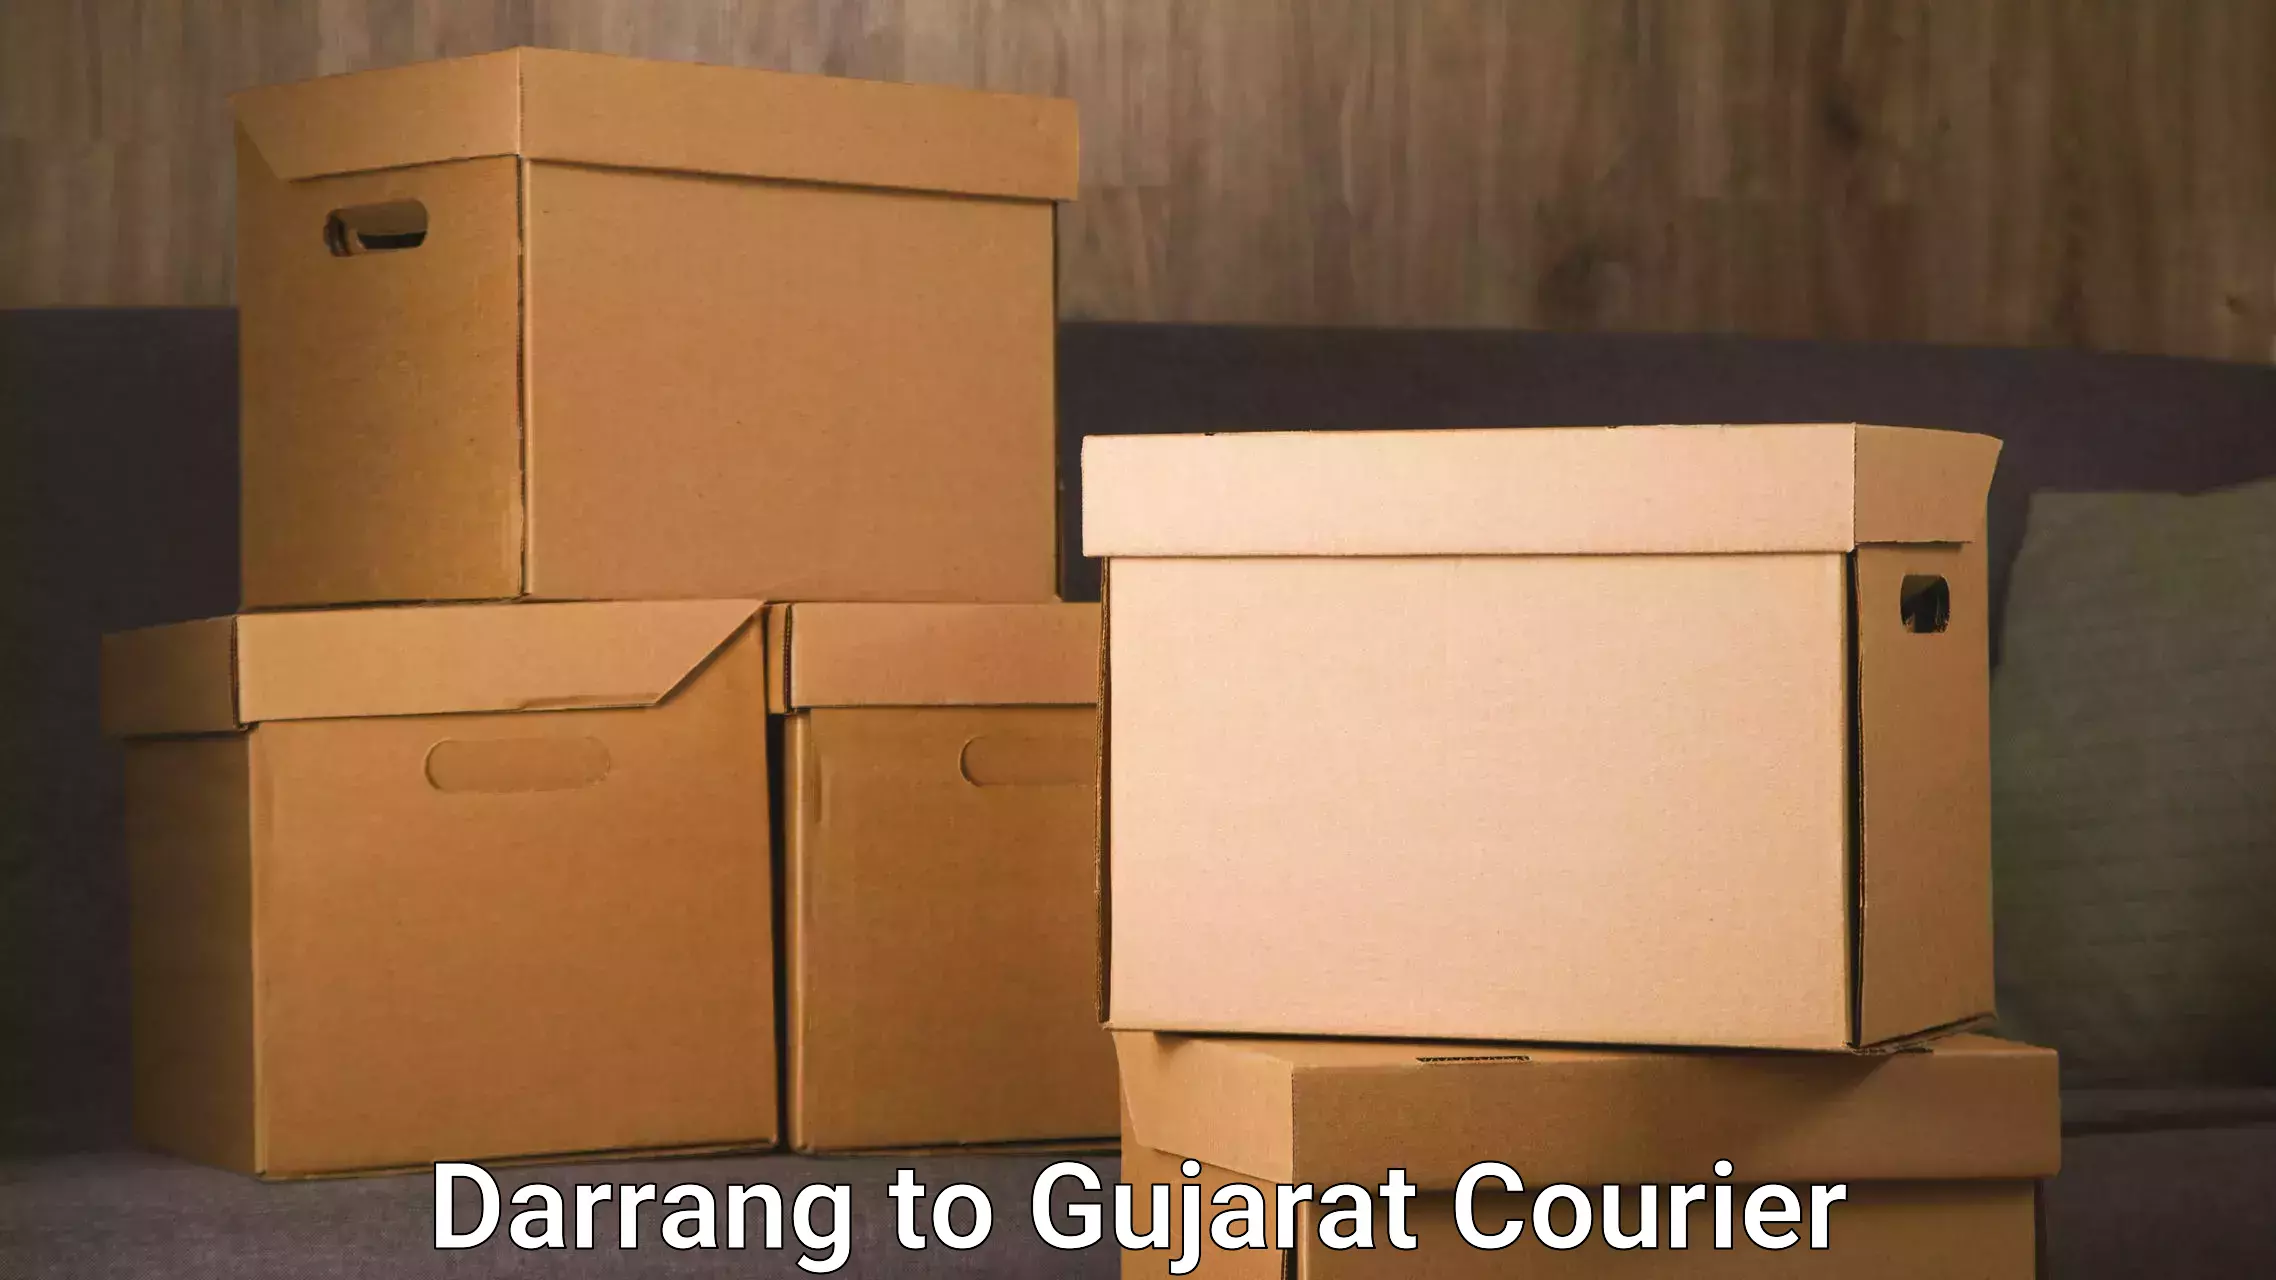 Enhanced tracking features Darrang to Vijapur